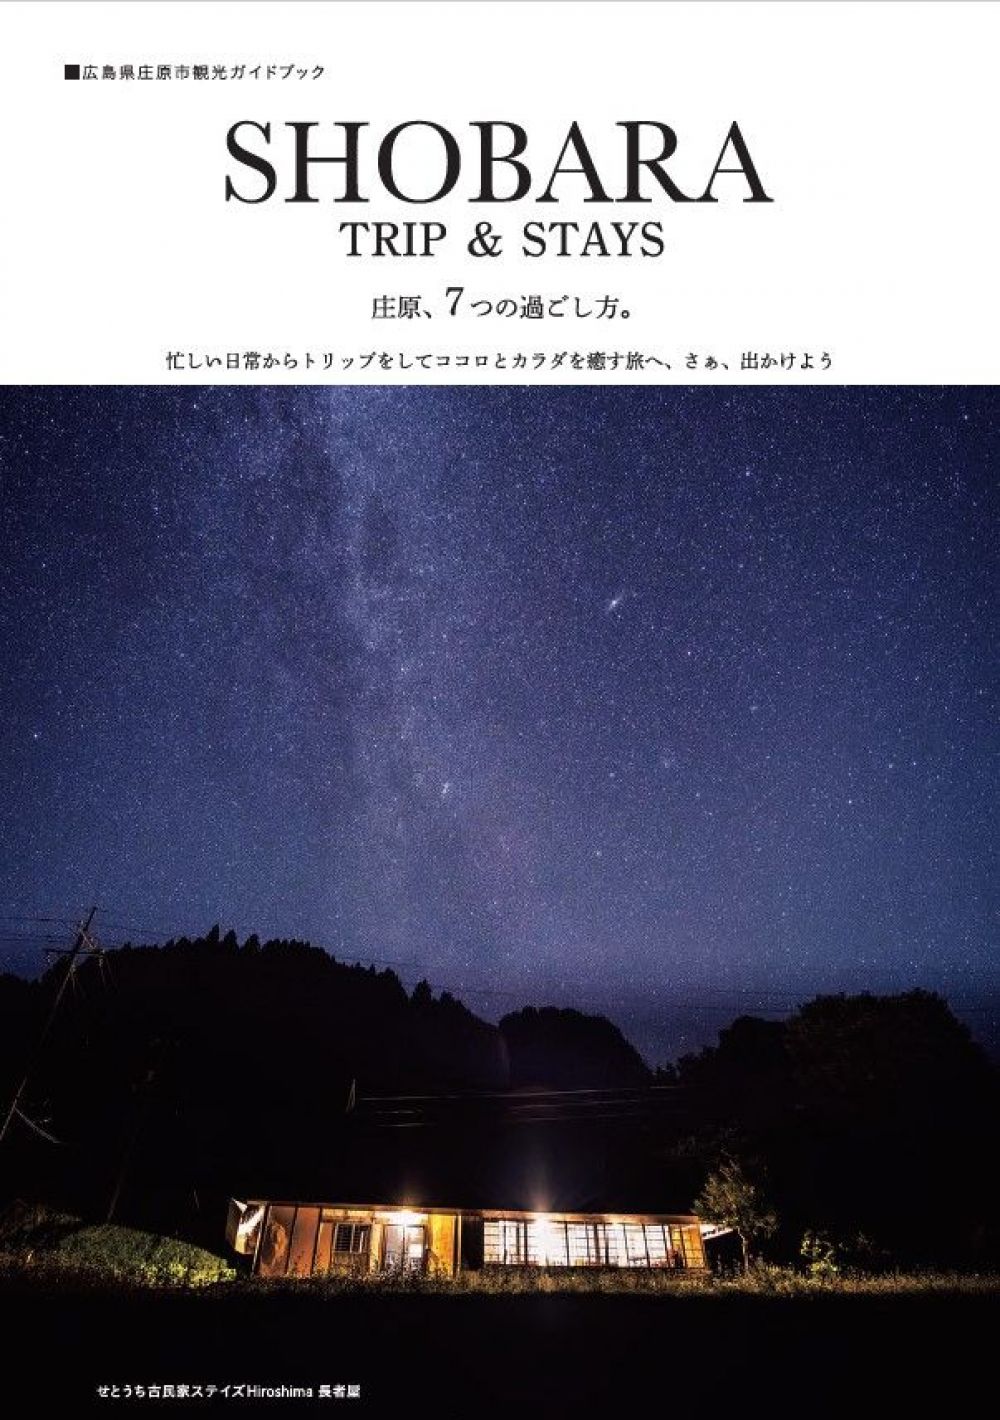 広島県庄原市観光ガイドブック「SHOBARA TRIP & STAYS」